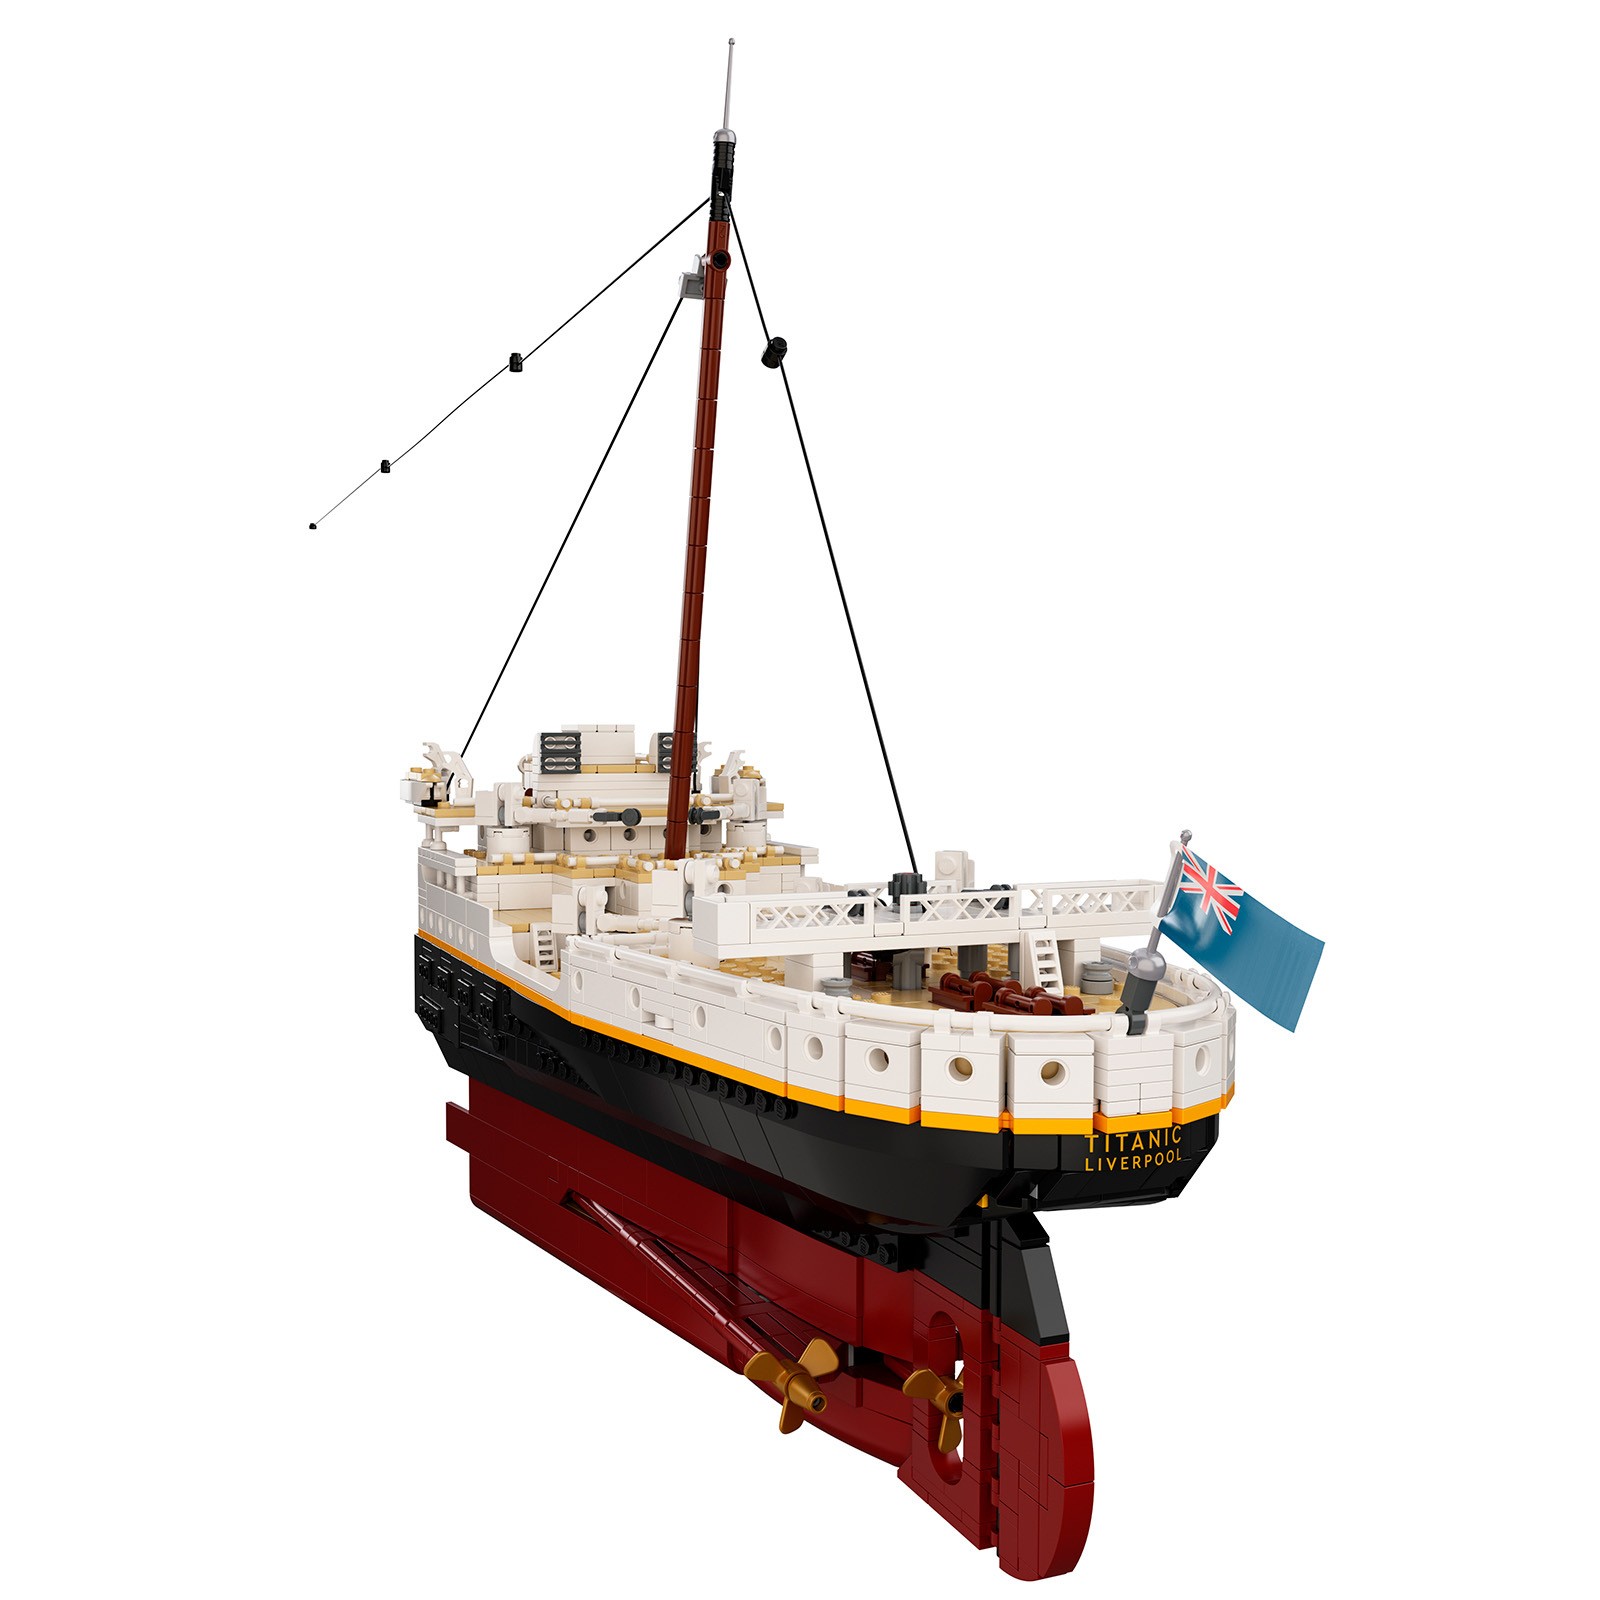 乐高推出泰坦尼克号拼装模型 9090块颗粒 售价5499元